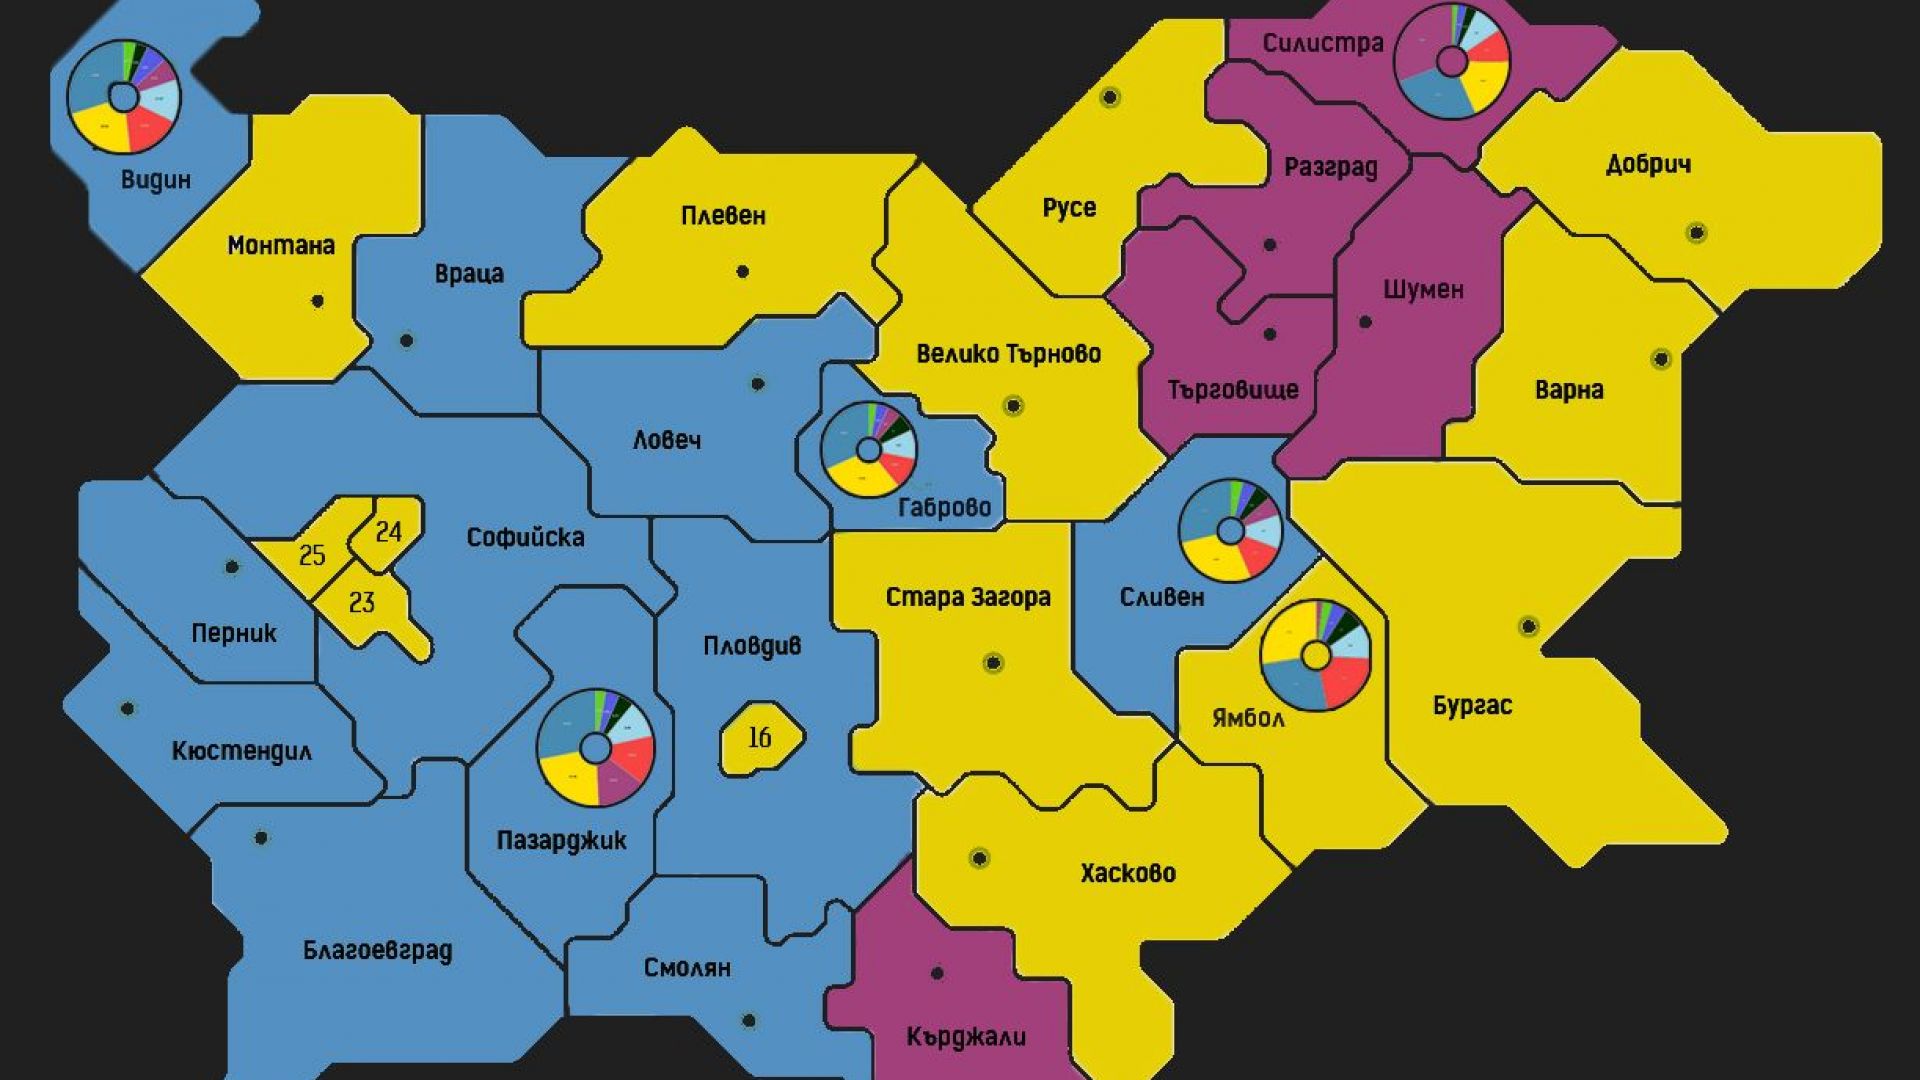 Вотът по региони: ПП печели София и 10 области, ГЕРБ първи в 12 областни града, 5 взема ДПС